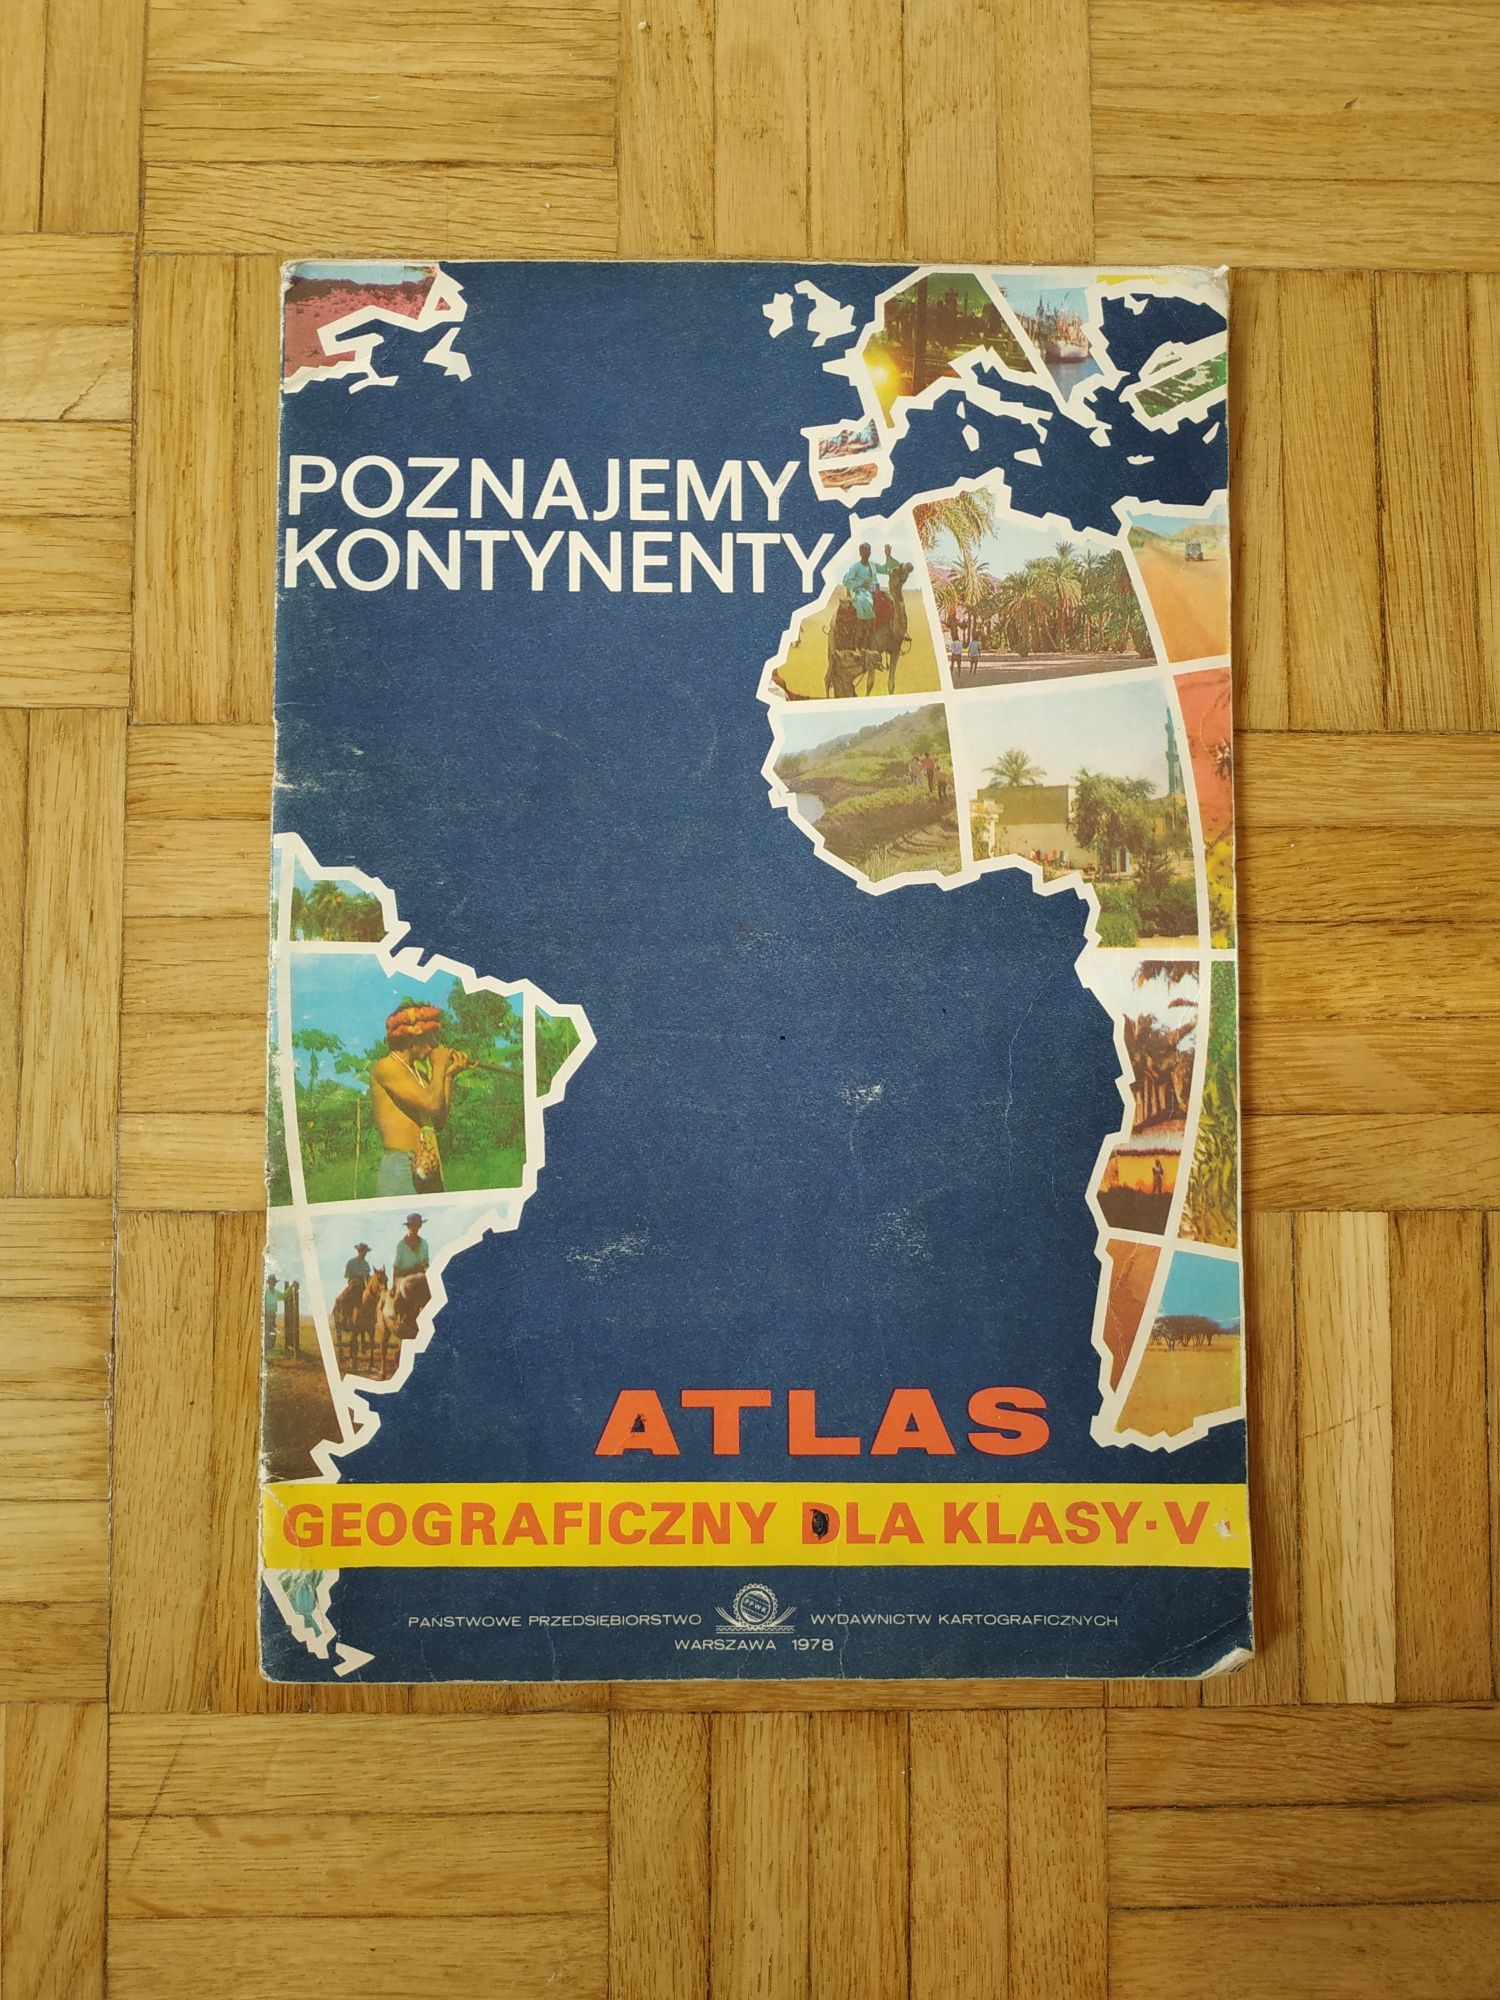 Atlas geograficzny Poznajemy kontynenty, stare mapy